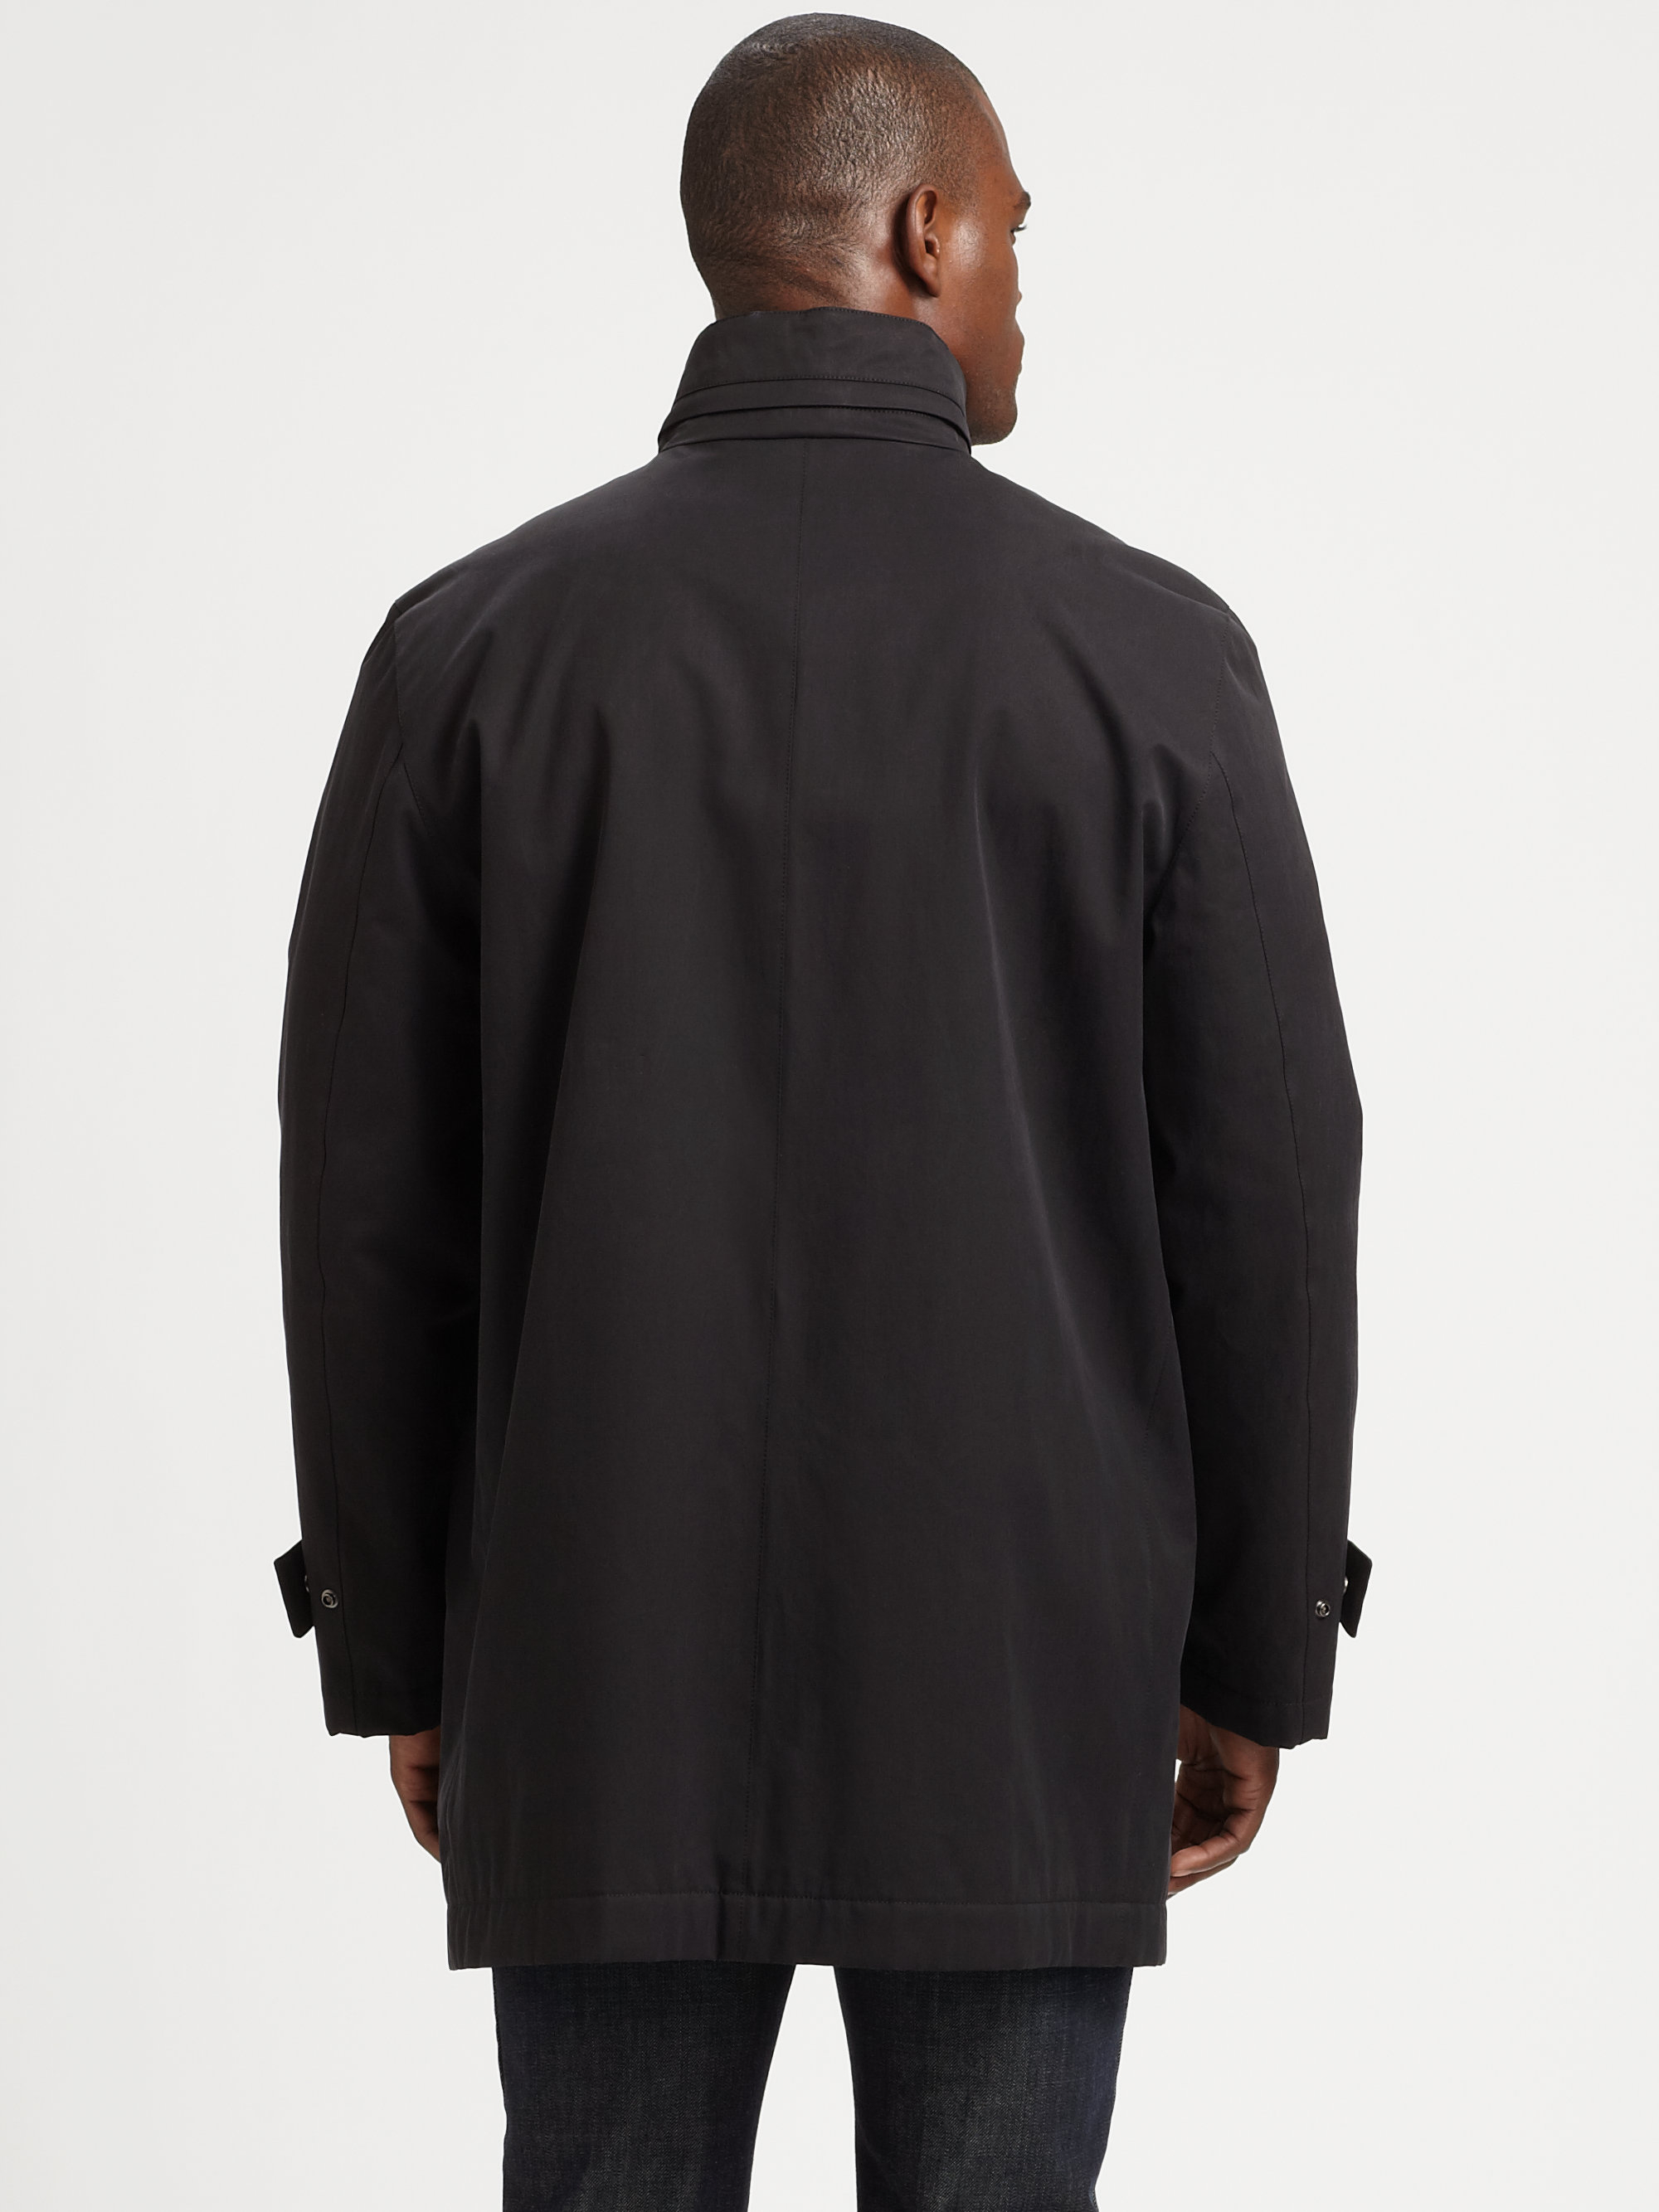 Ferragamo Wool Car Coat in Black for Men - Lyst